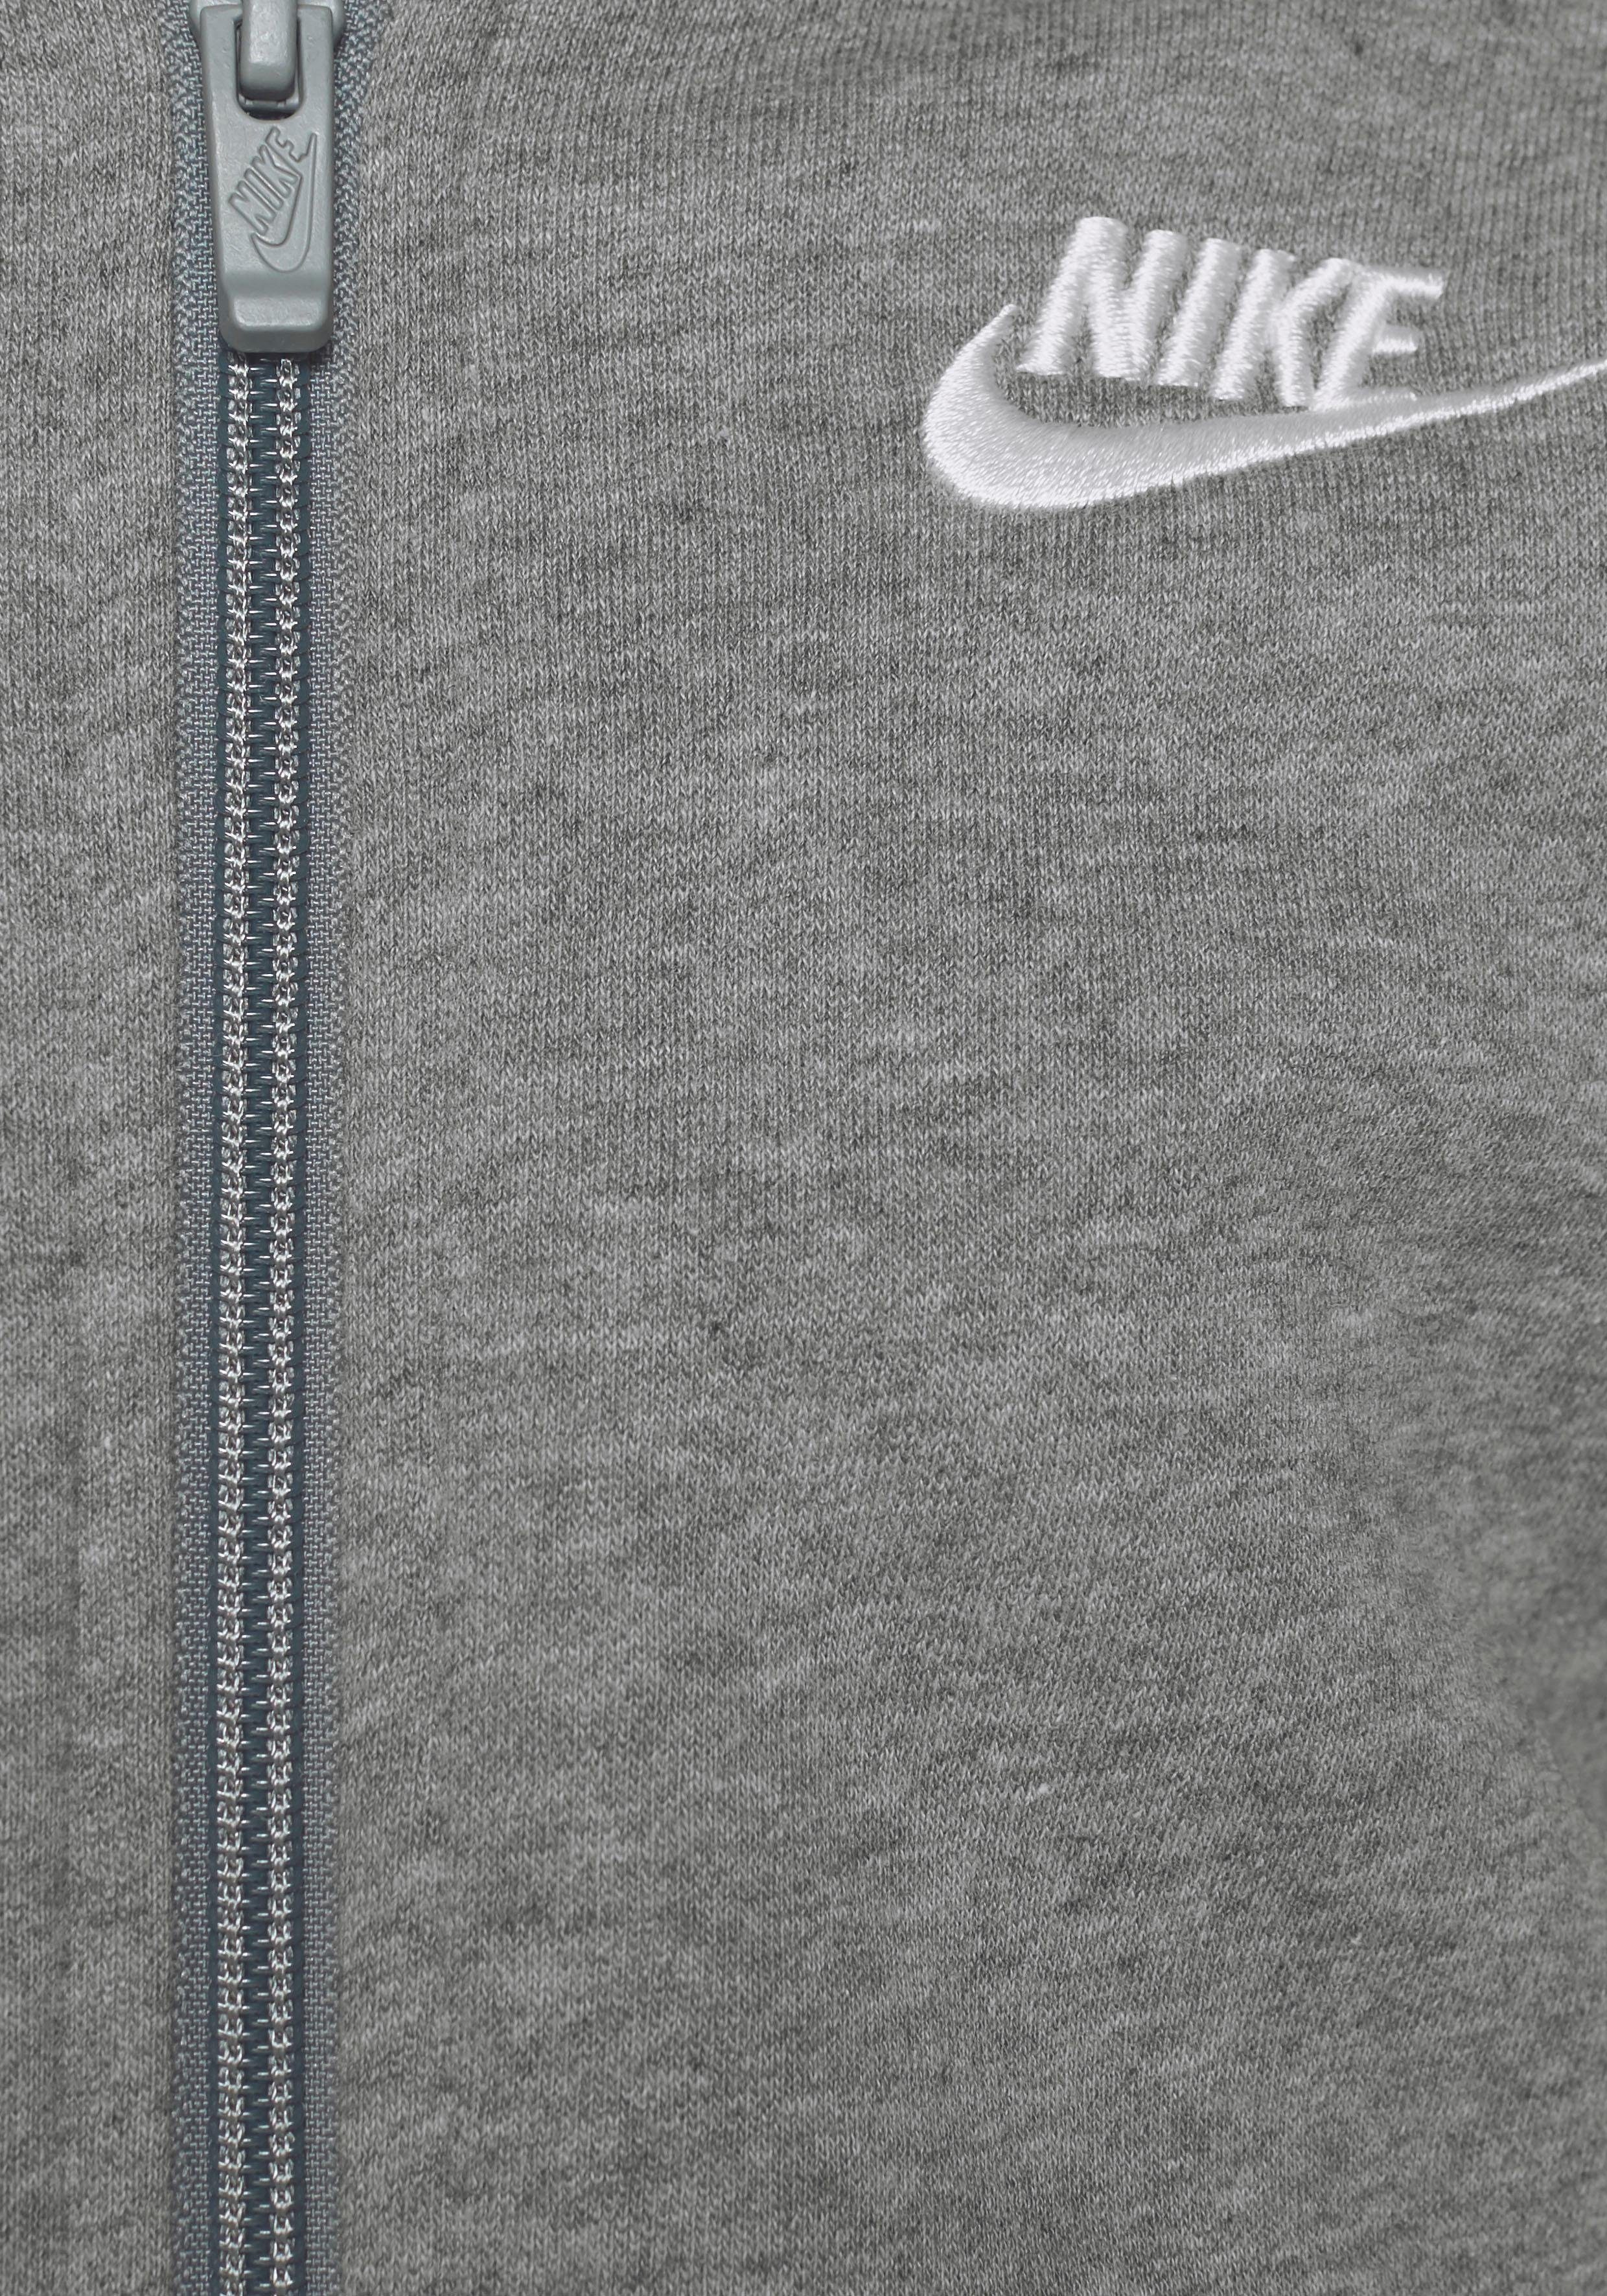 für Sportswear HOODIE CLUB NSW - FZ Kinder Kapuzensweatjacke grau-meliert Nike